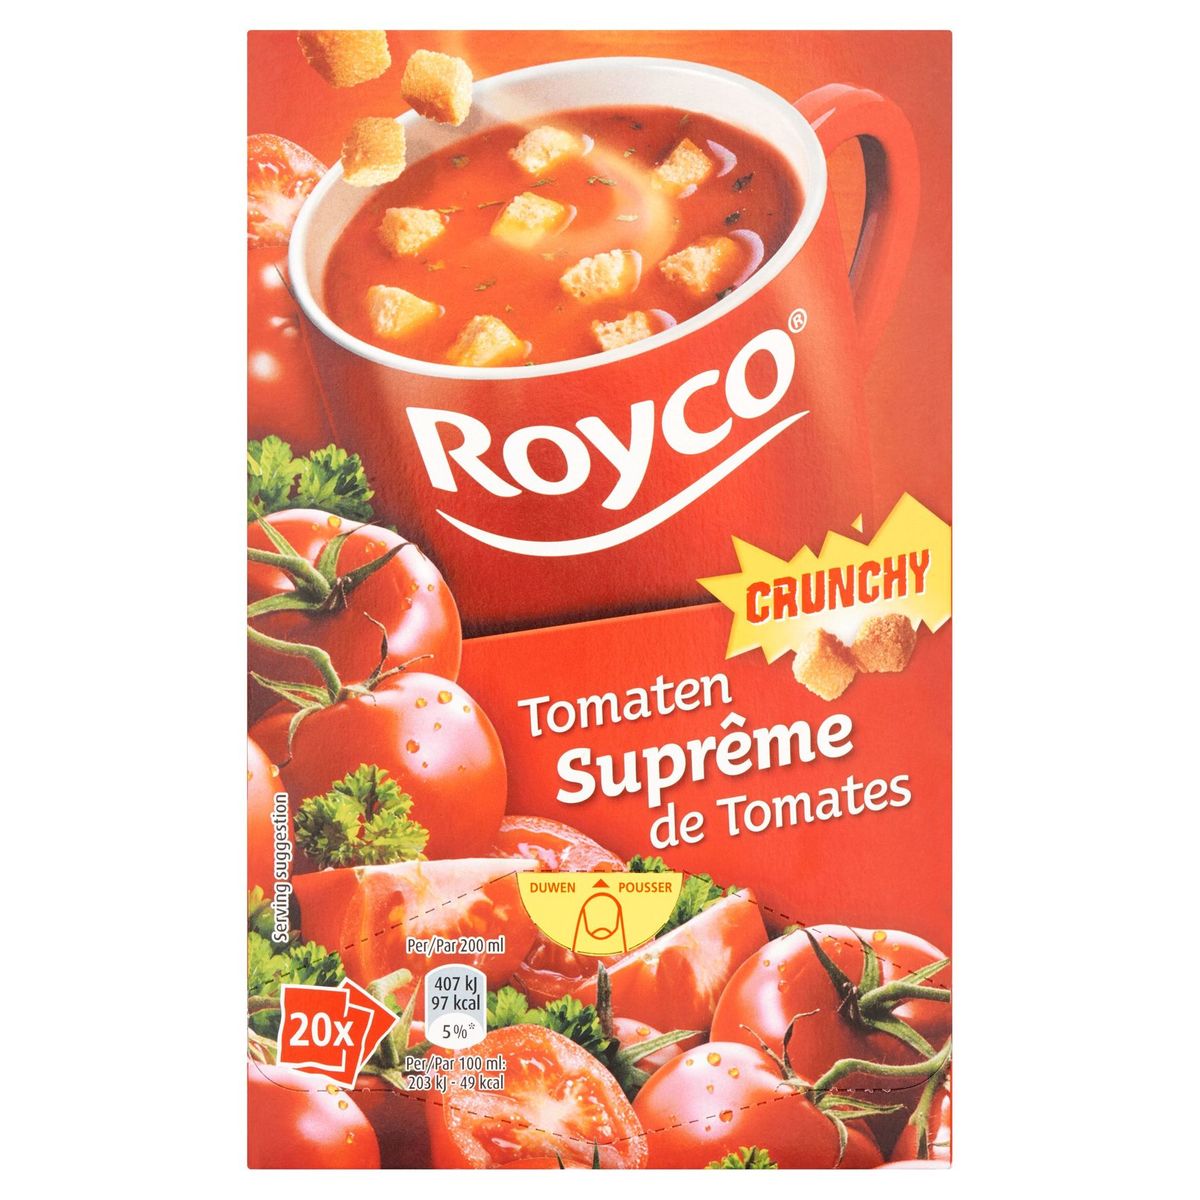 Royco Crunchy Suprême de Tomates 20 x 20.7 g